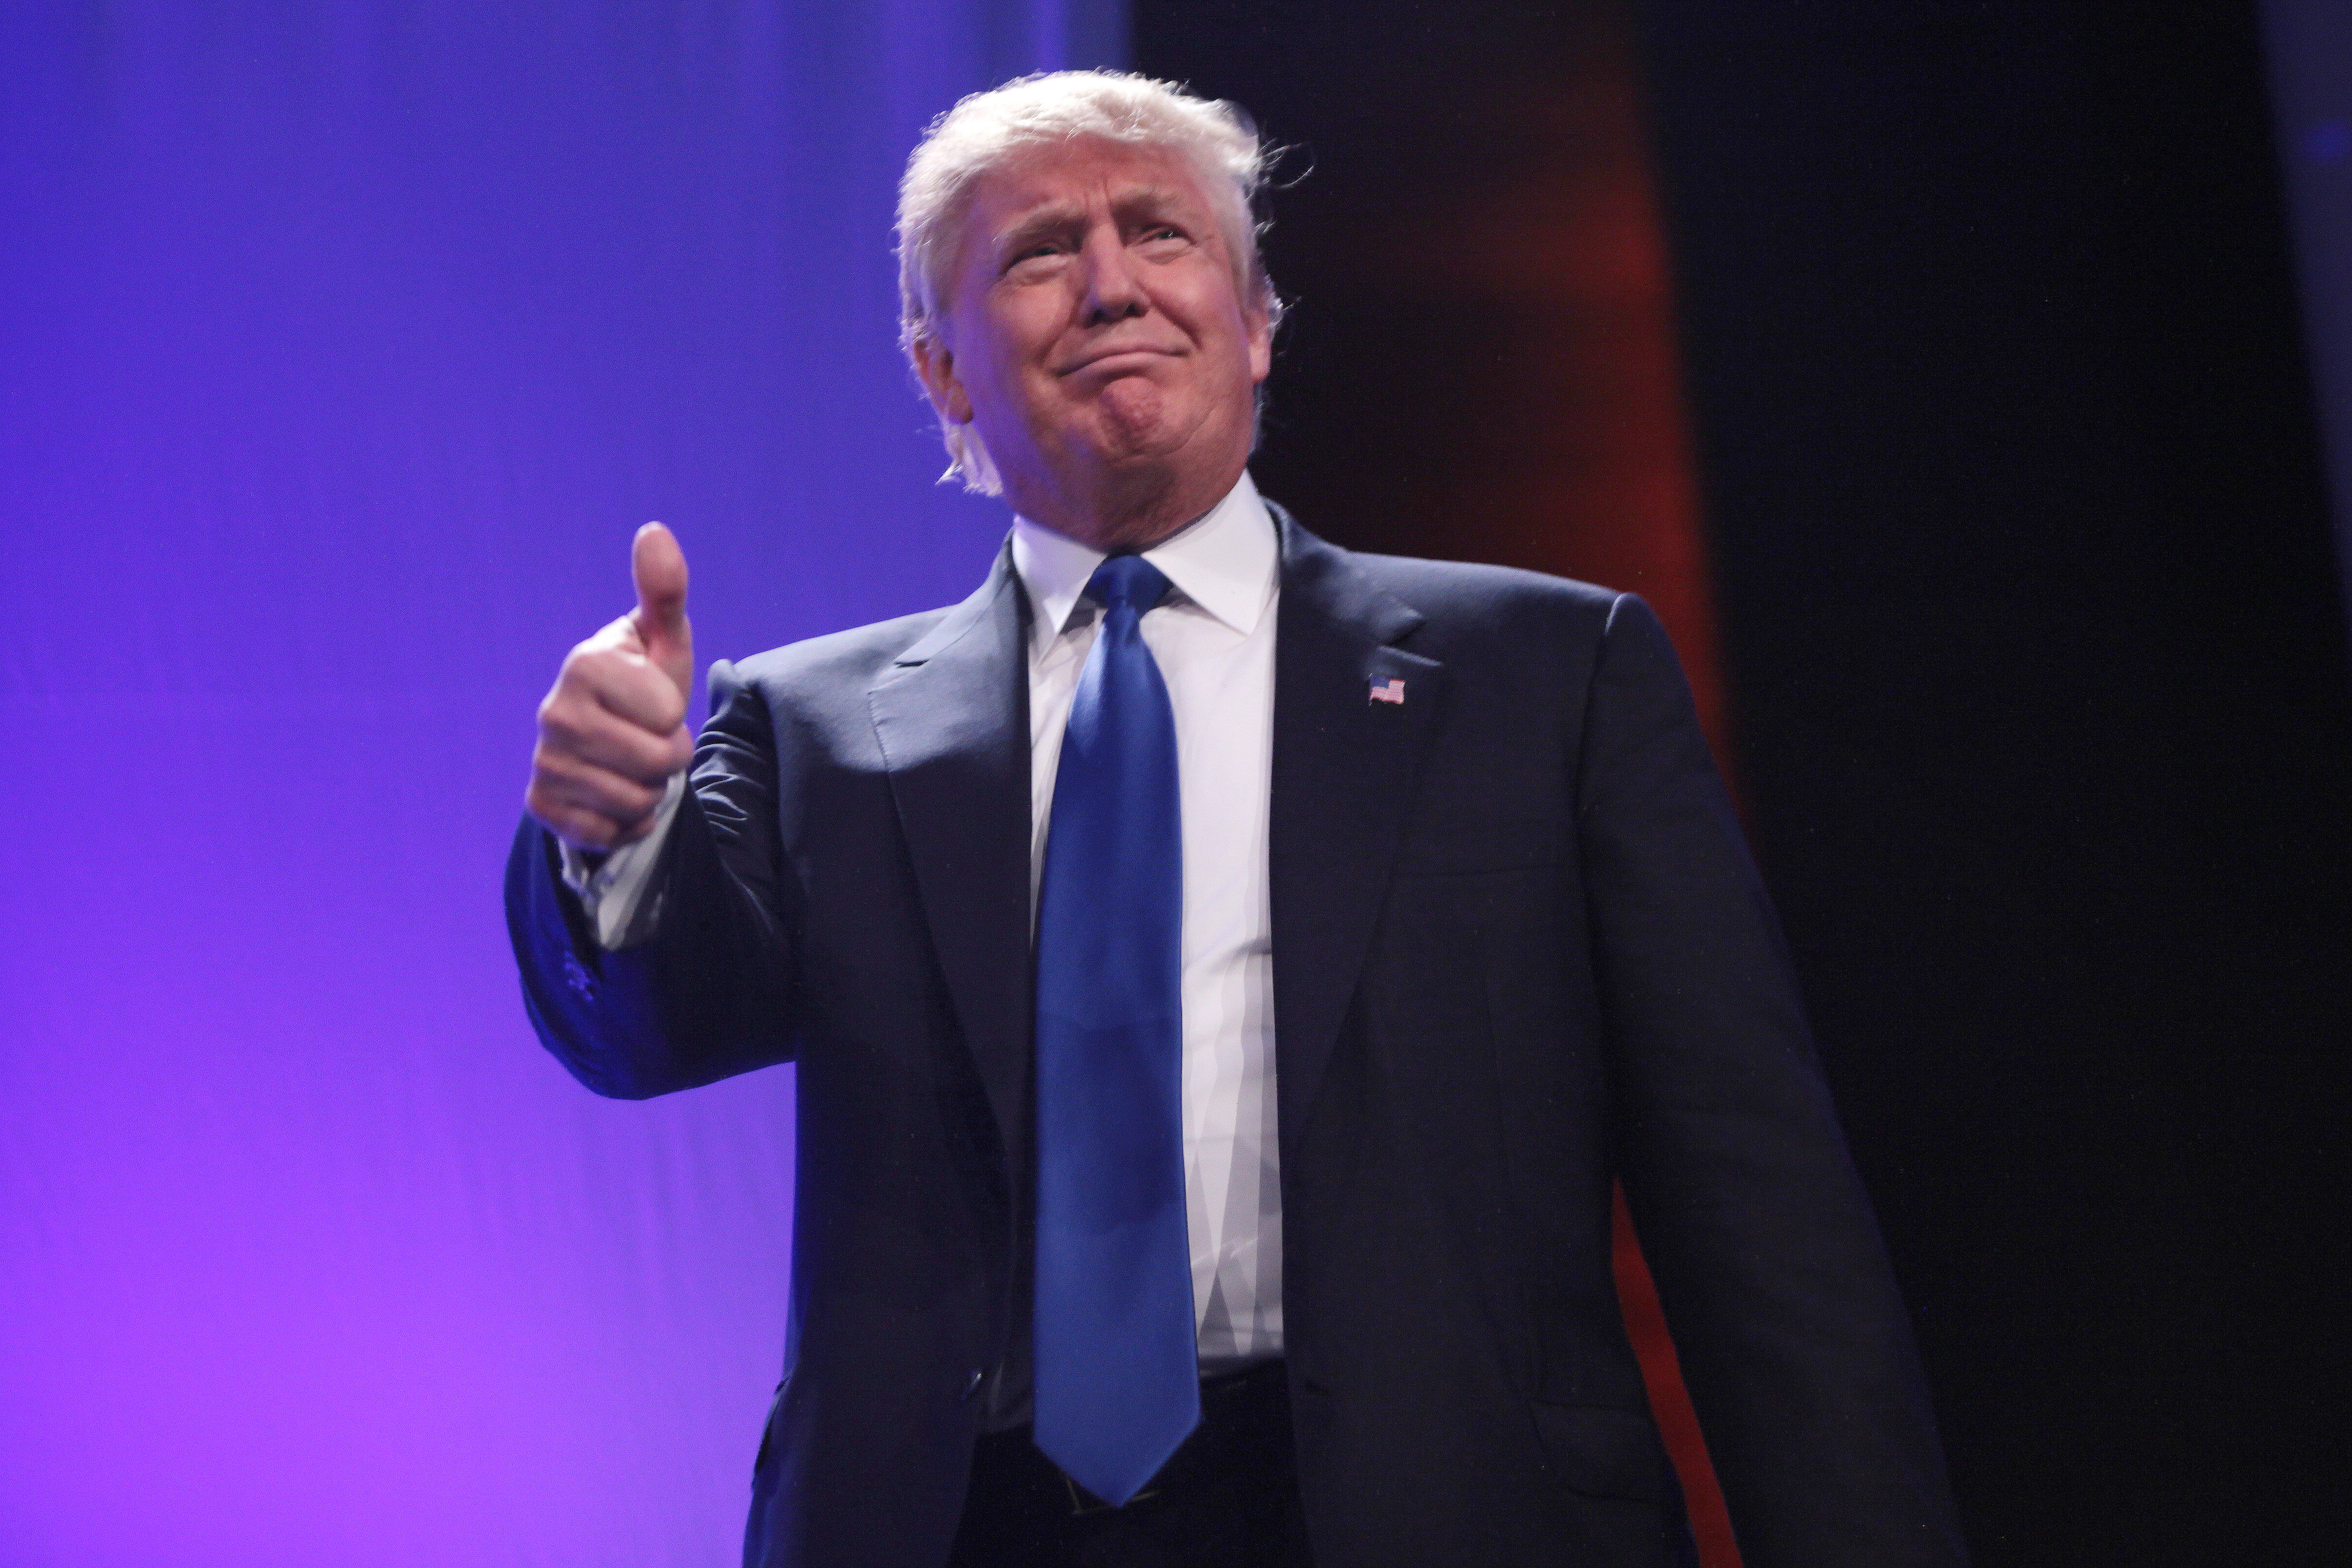 Presidente dos Estados Unidos acena em foto com o sinal de "joinha"